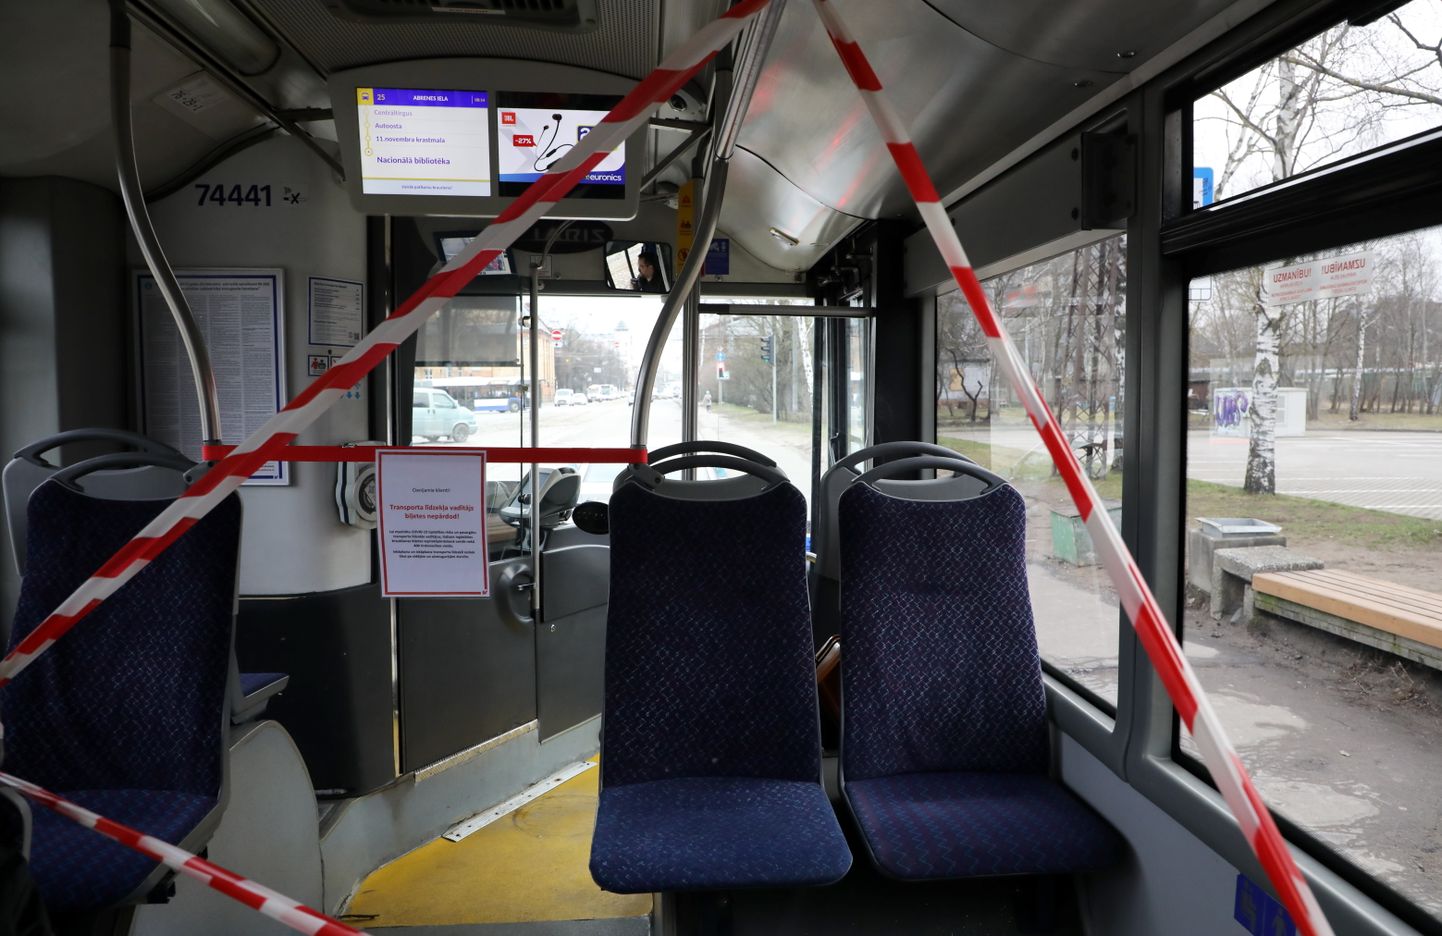 Vadītāju izolējoši norobežojumi  SIA "Rīgas satiksme" autobusā.